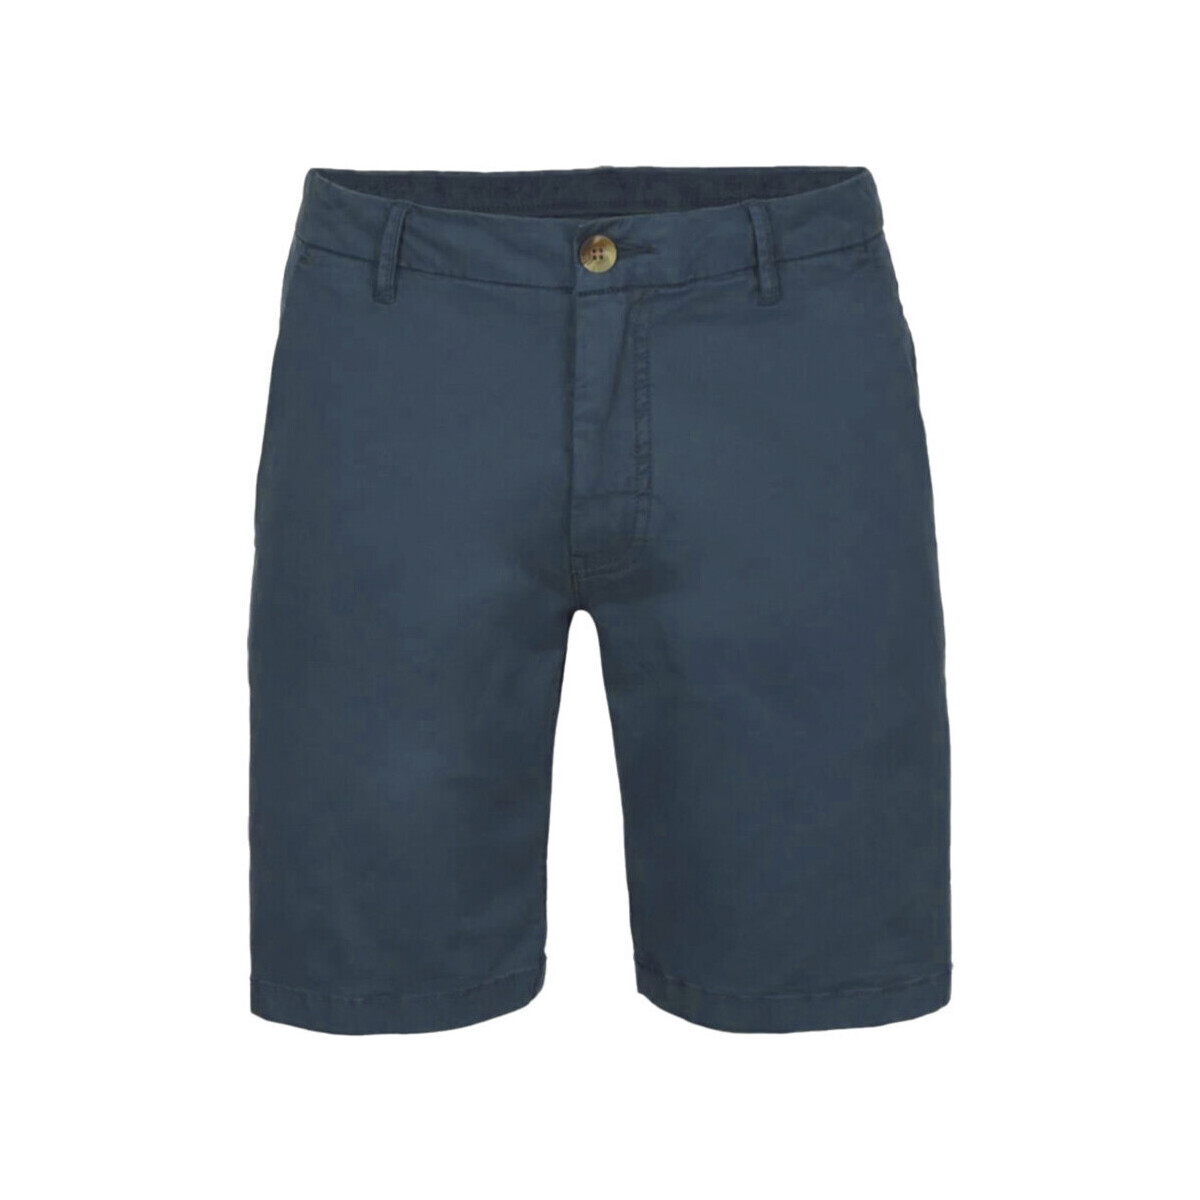 Vêtements Homme Shorts / Bermudas O'neill 2700000-15012 Bleu